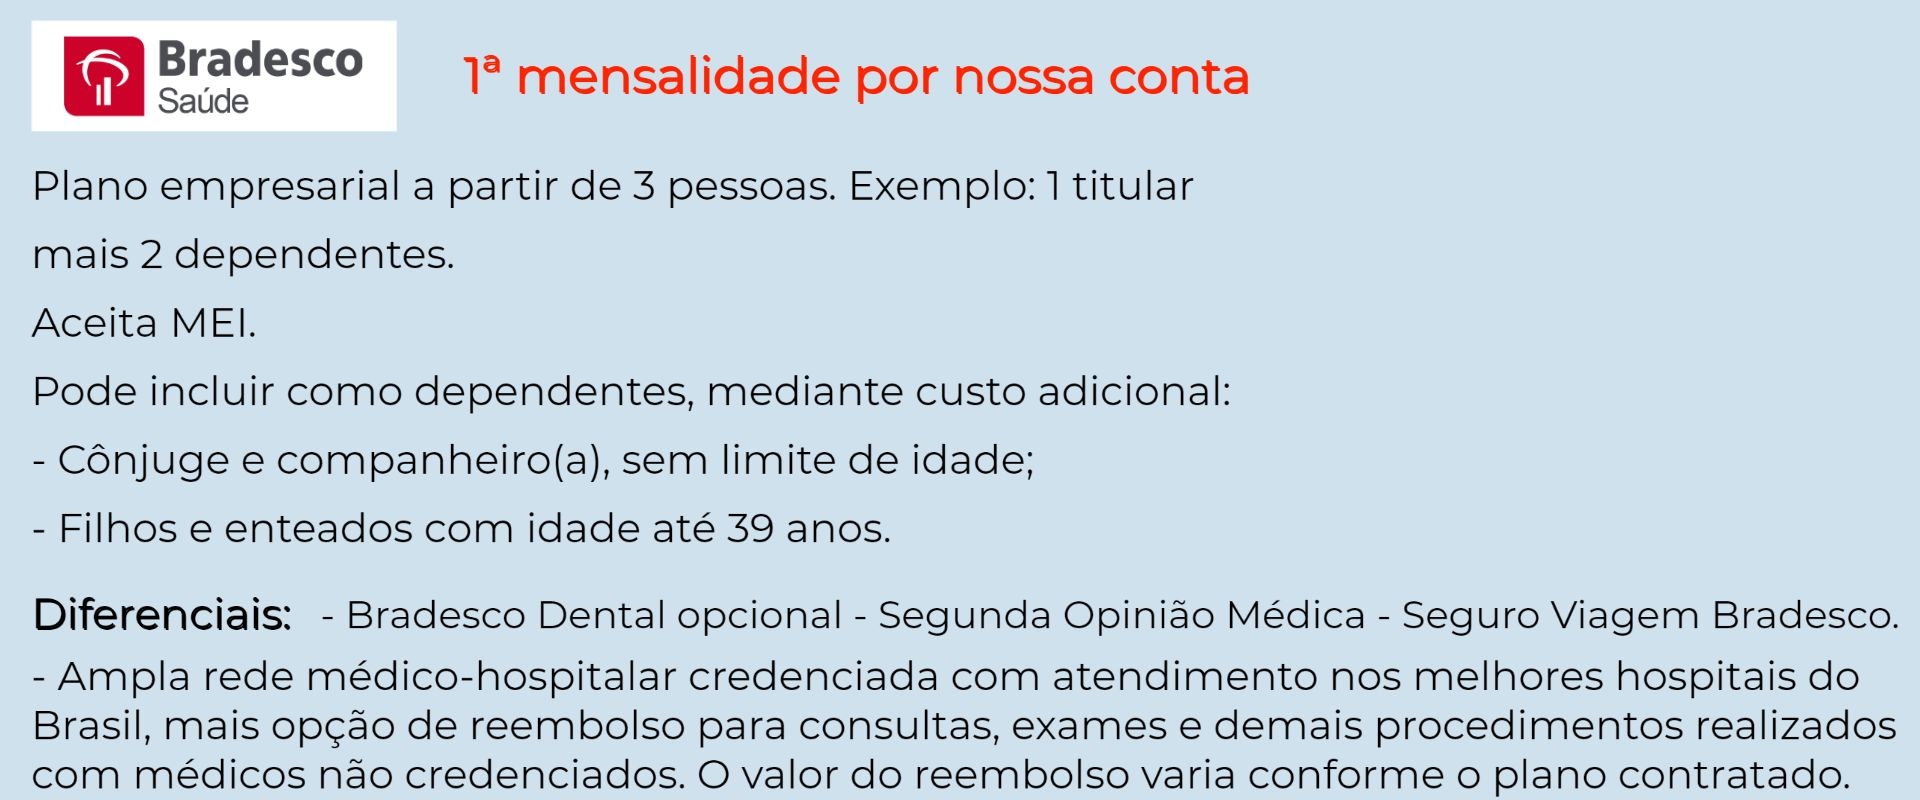 Bradesco Saúde Empresarial - Cruzeiro 